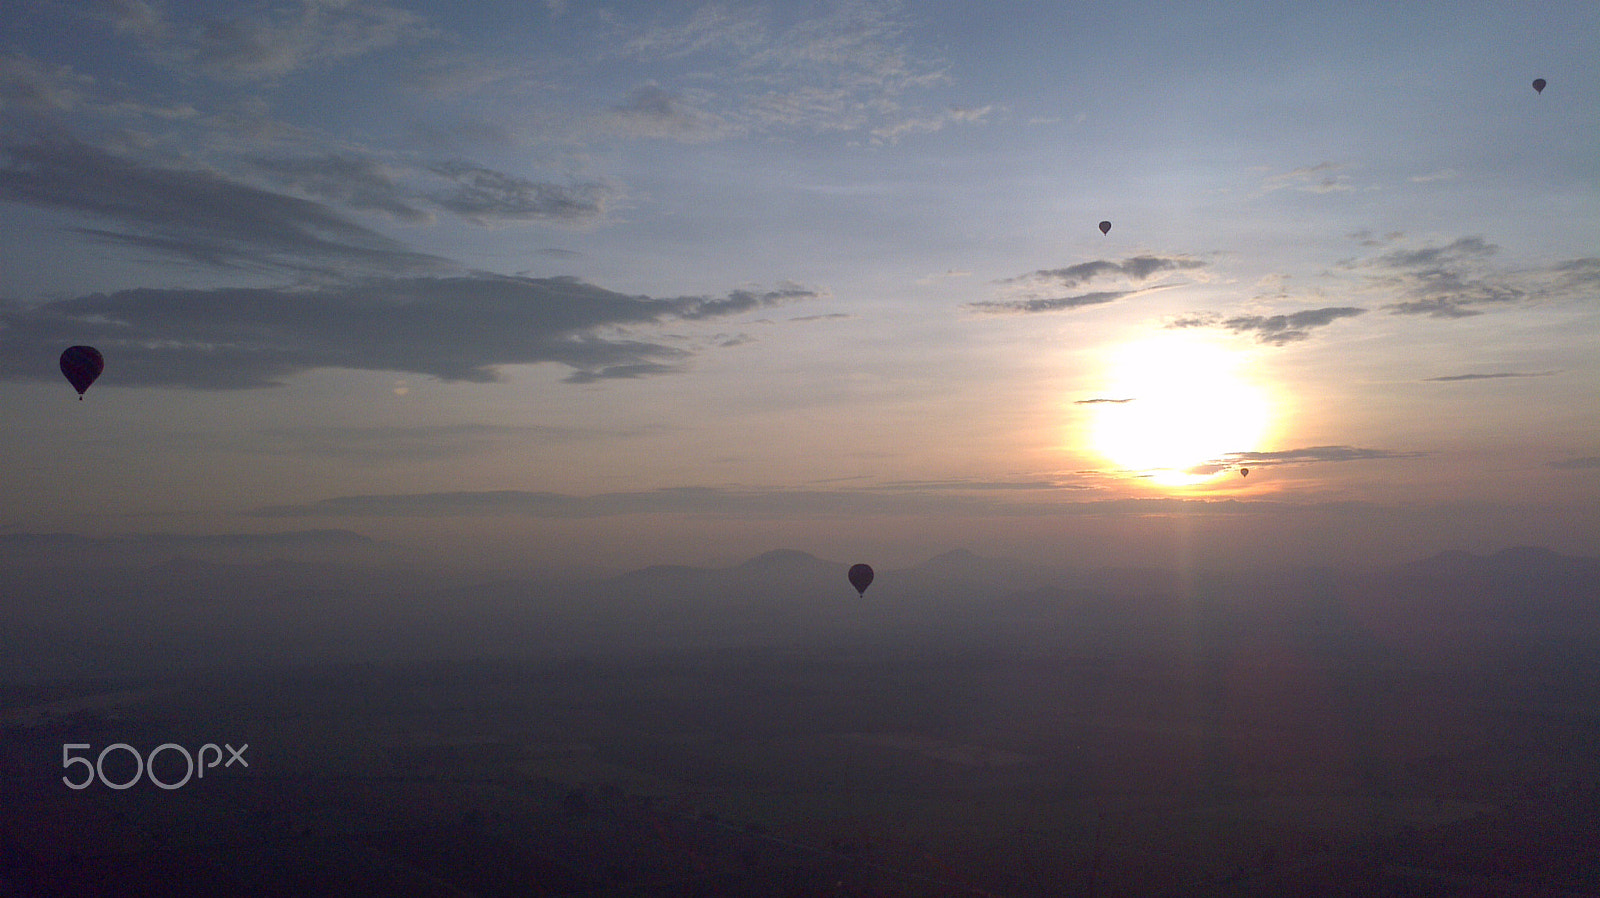 Motorola Atrix sample photo. Flying in the sunrise photography